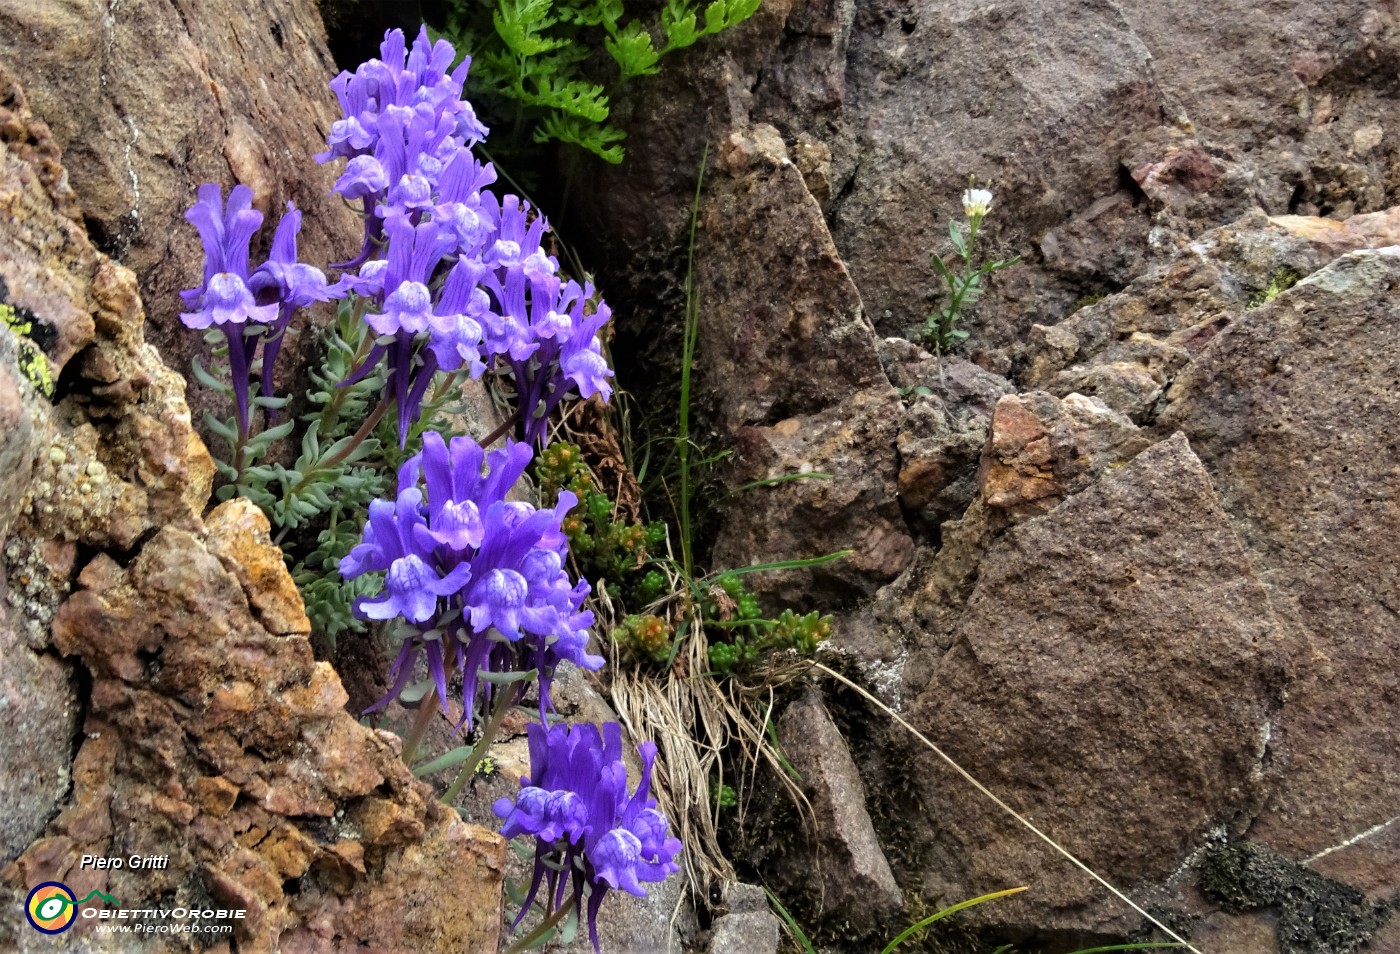 75 Bellissimi fiori di Linaiola alpina (Linaria alpina) nella roccia.JPG